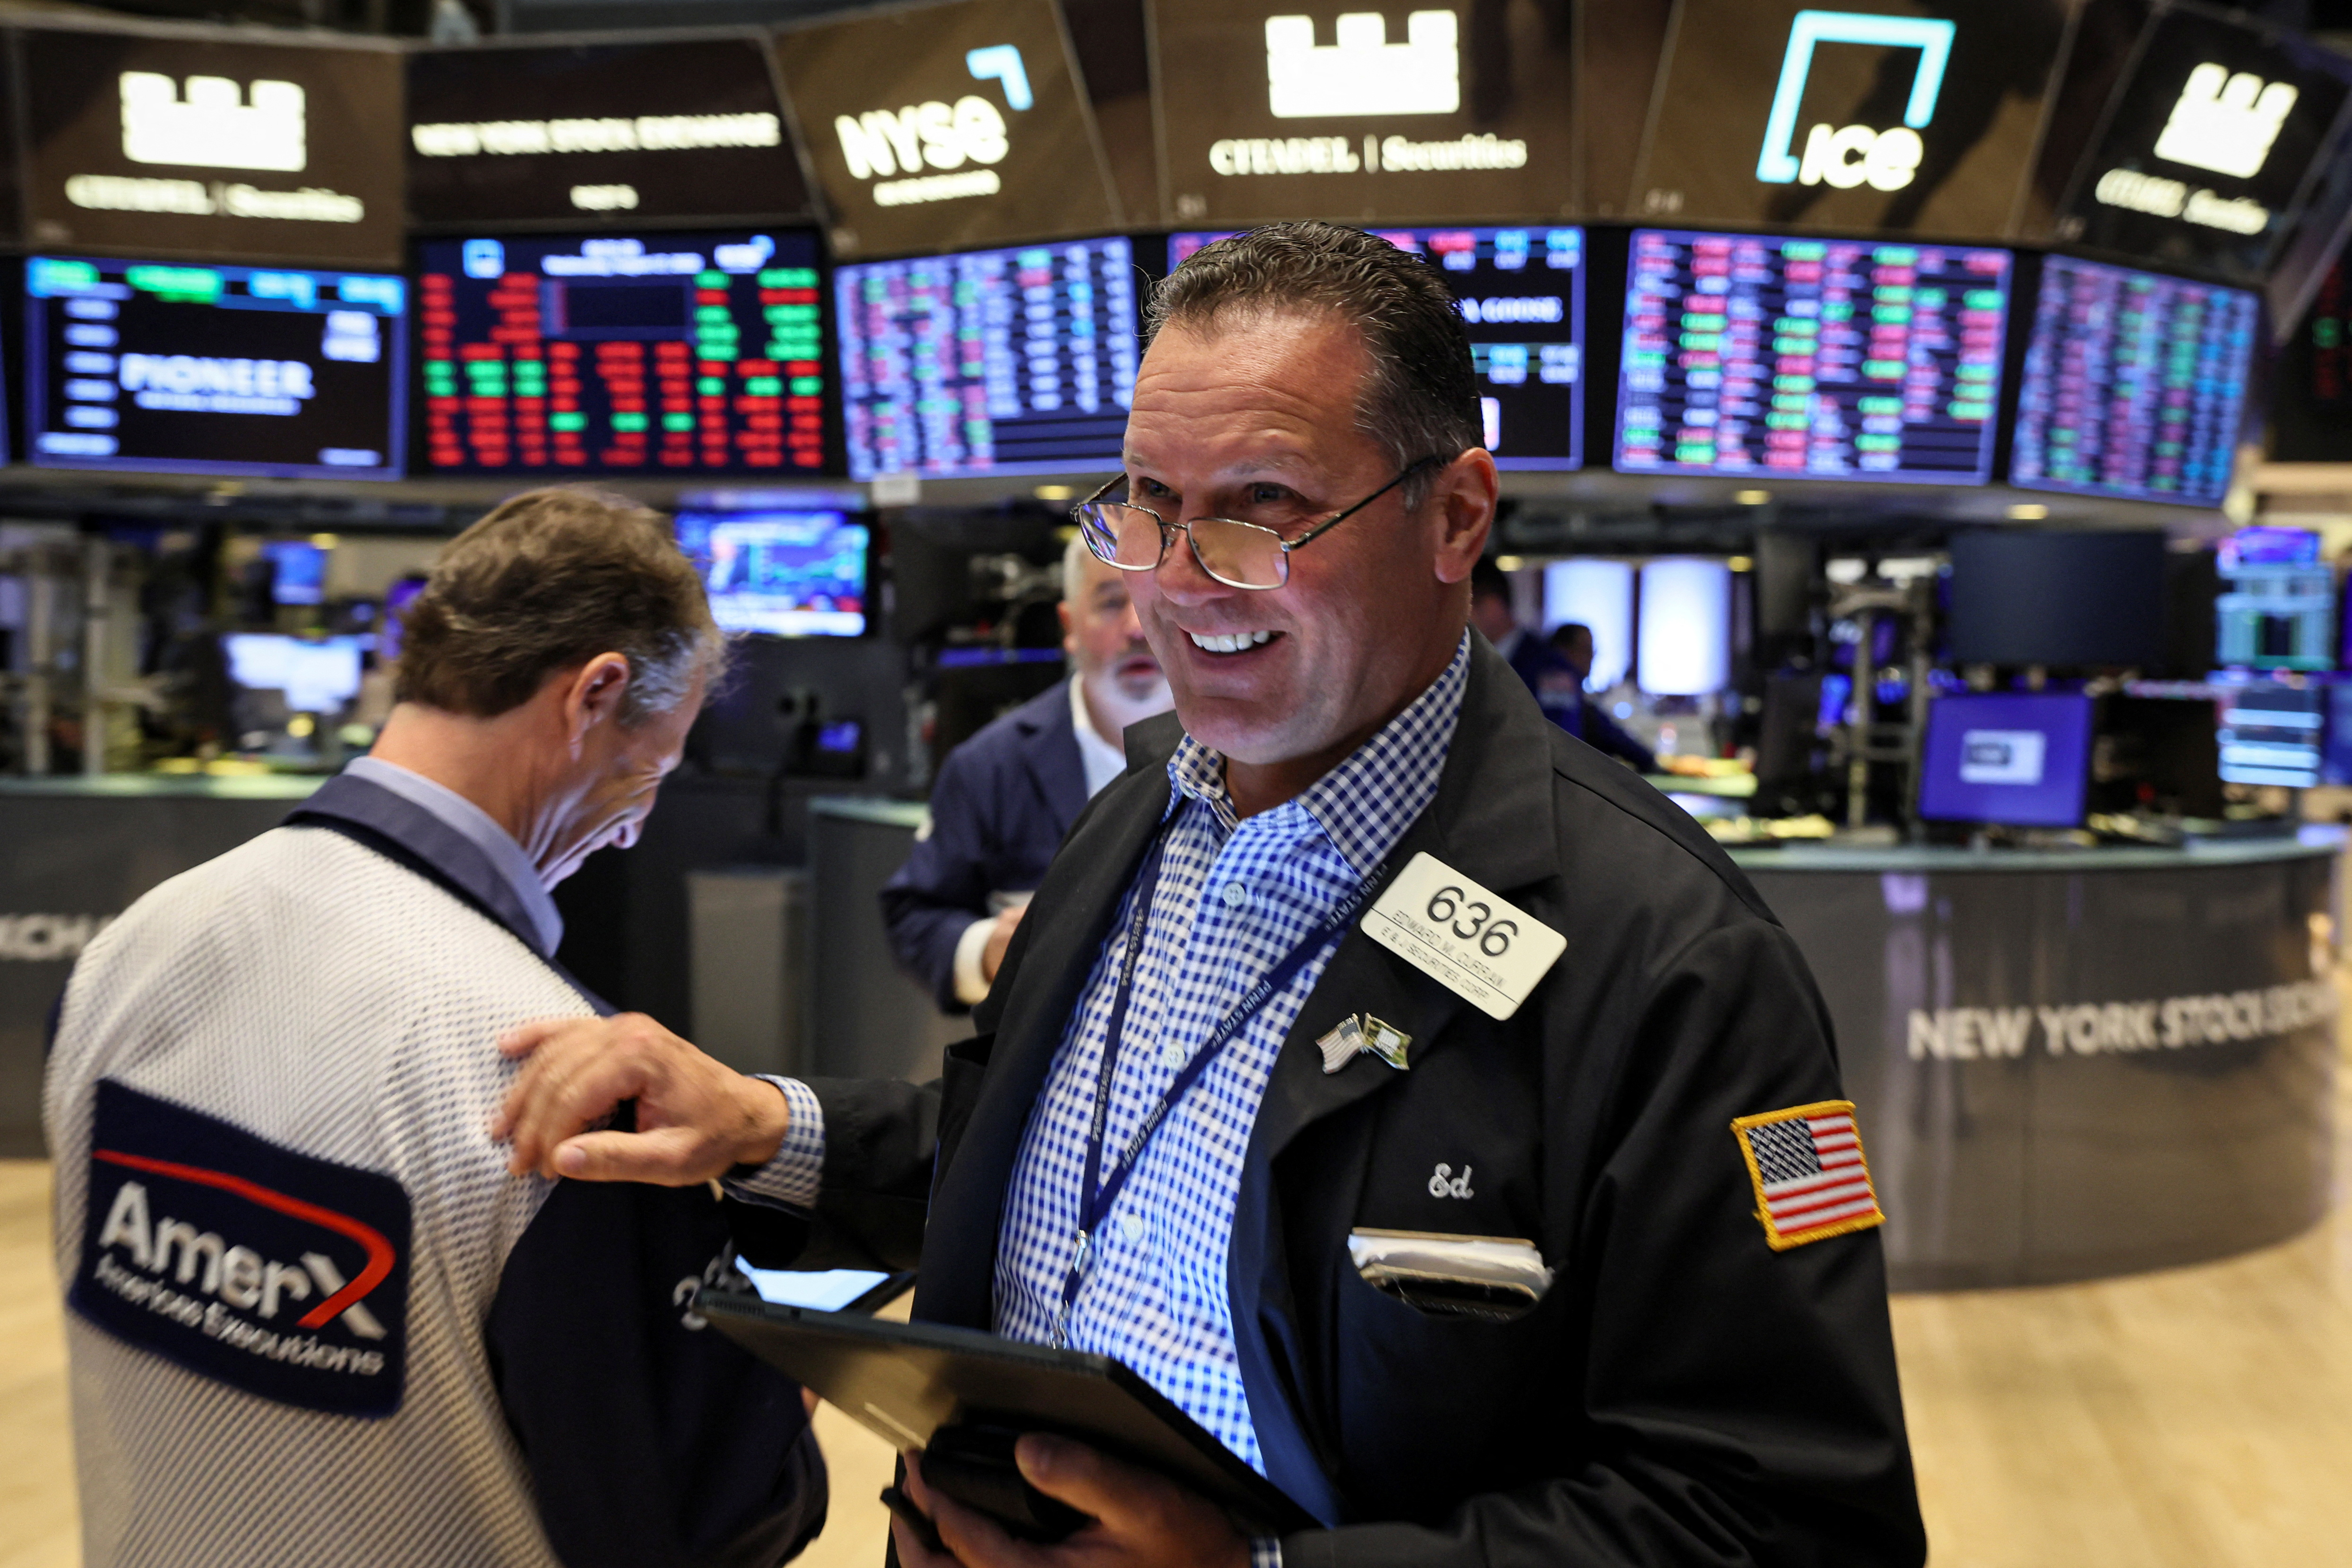 El veranito financiero fue impulsado también por el mejor clima externo, con Wall Street acumulando subas y un regreso de fondos a los mercados emergentes
REUTERS/Brendan McDermid